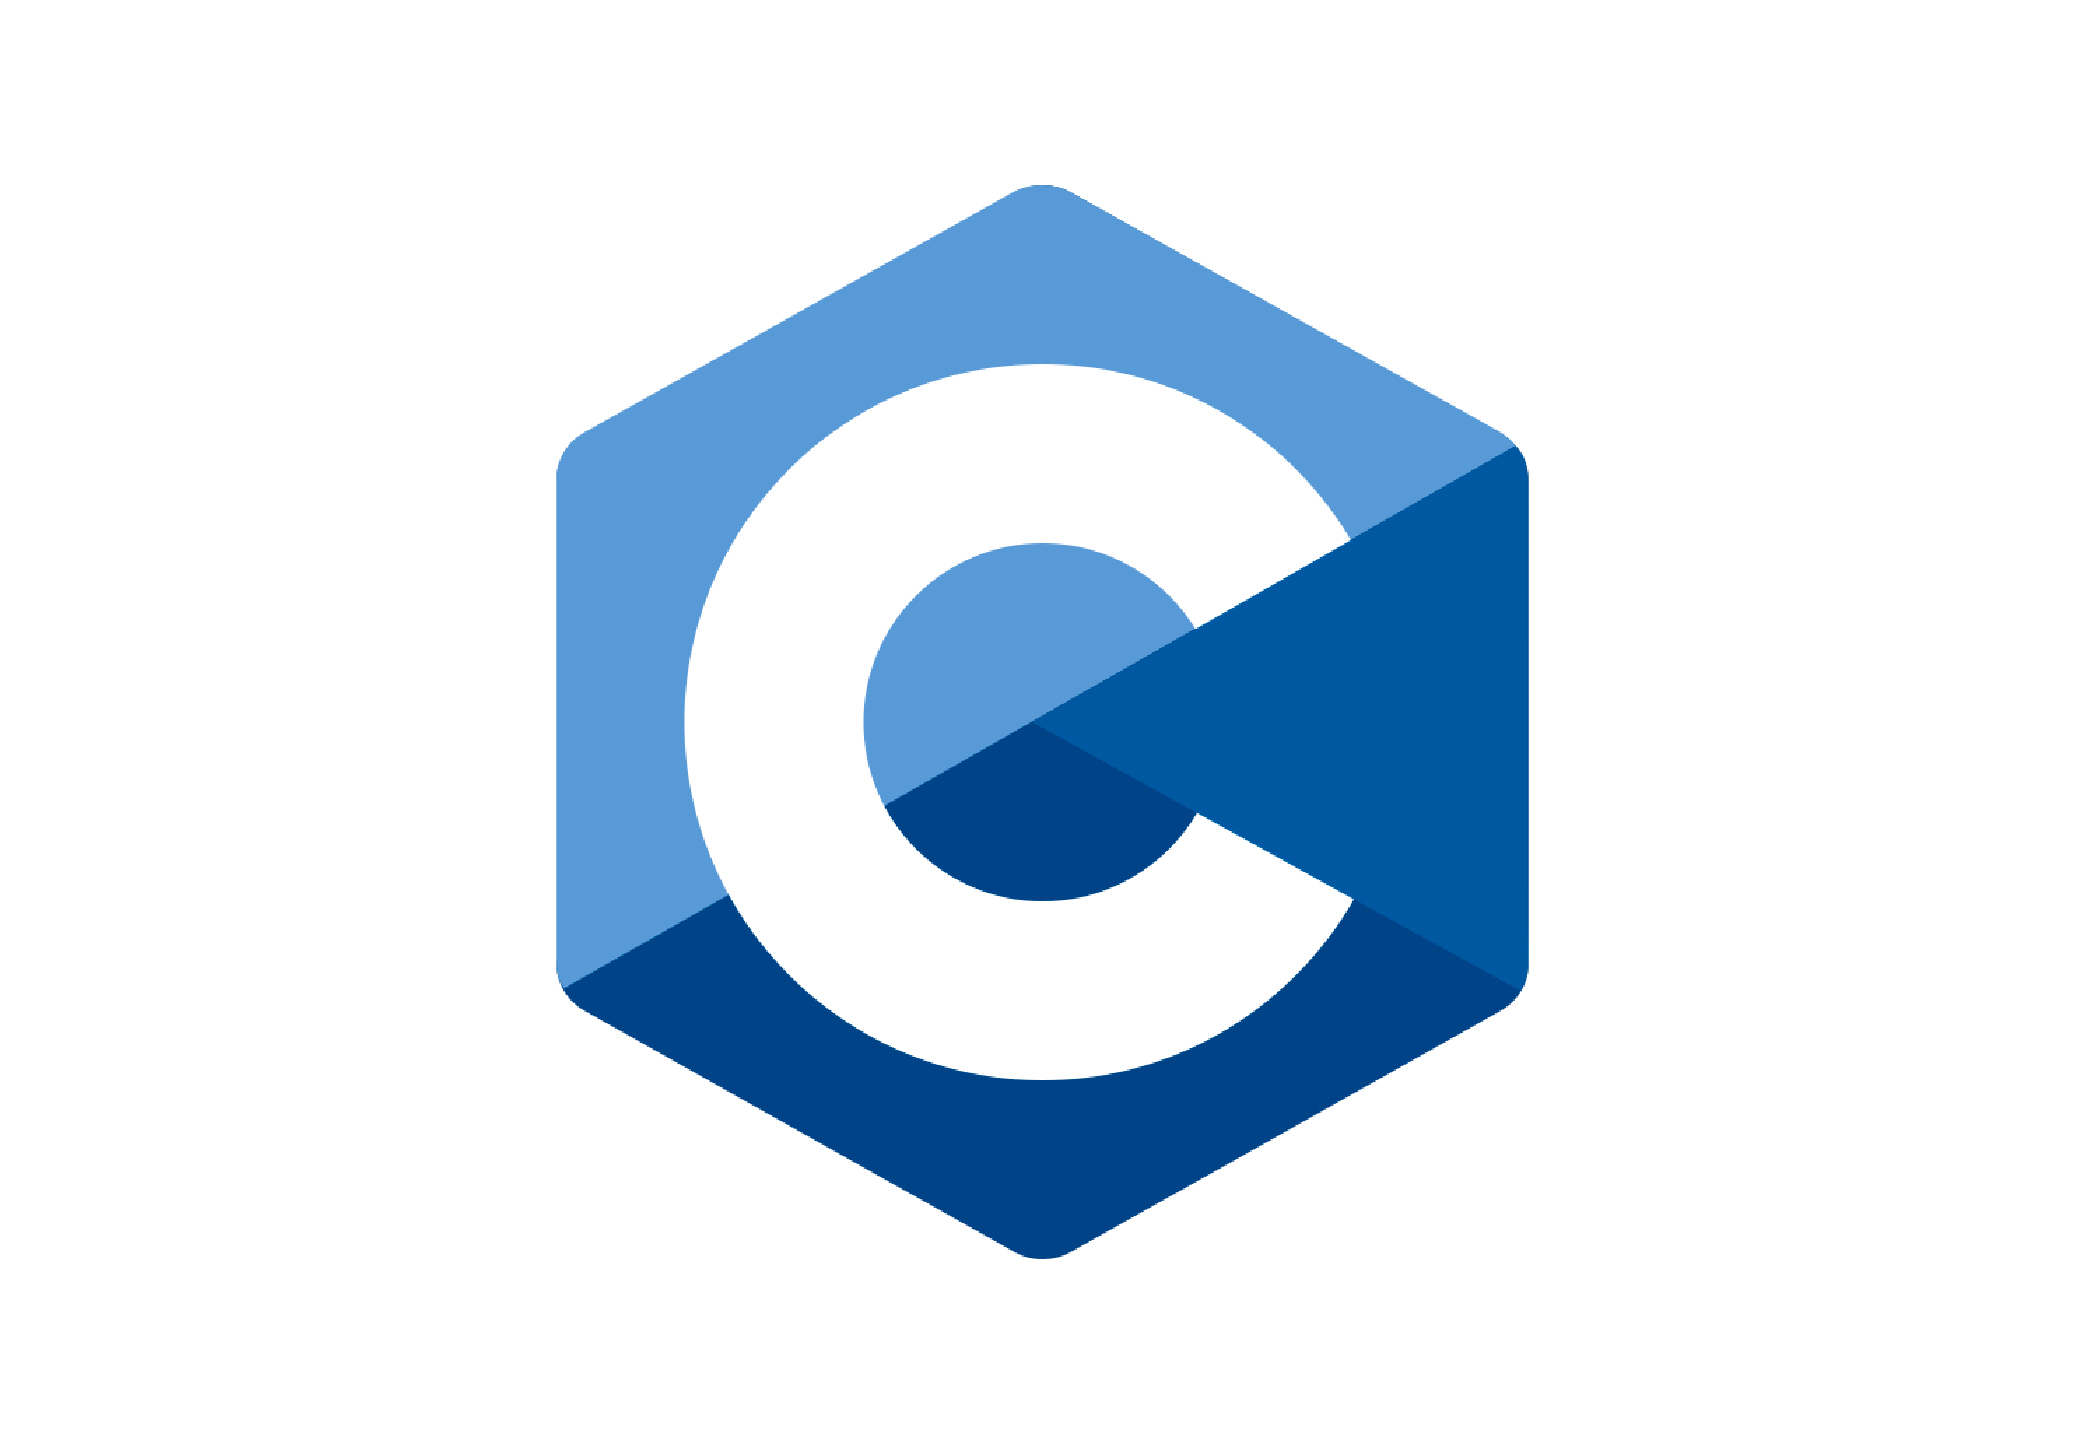 C language logo